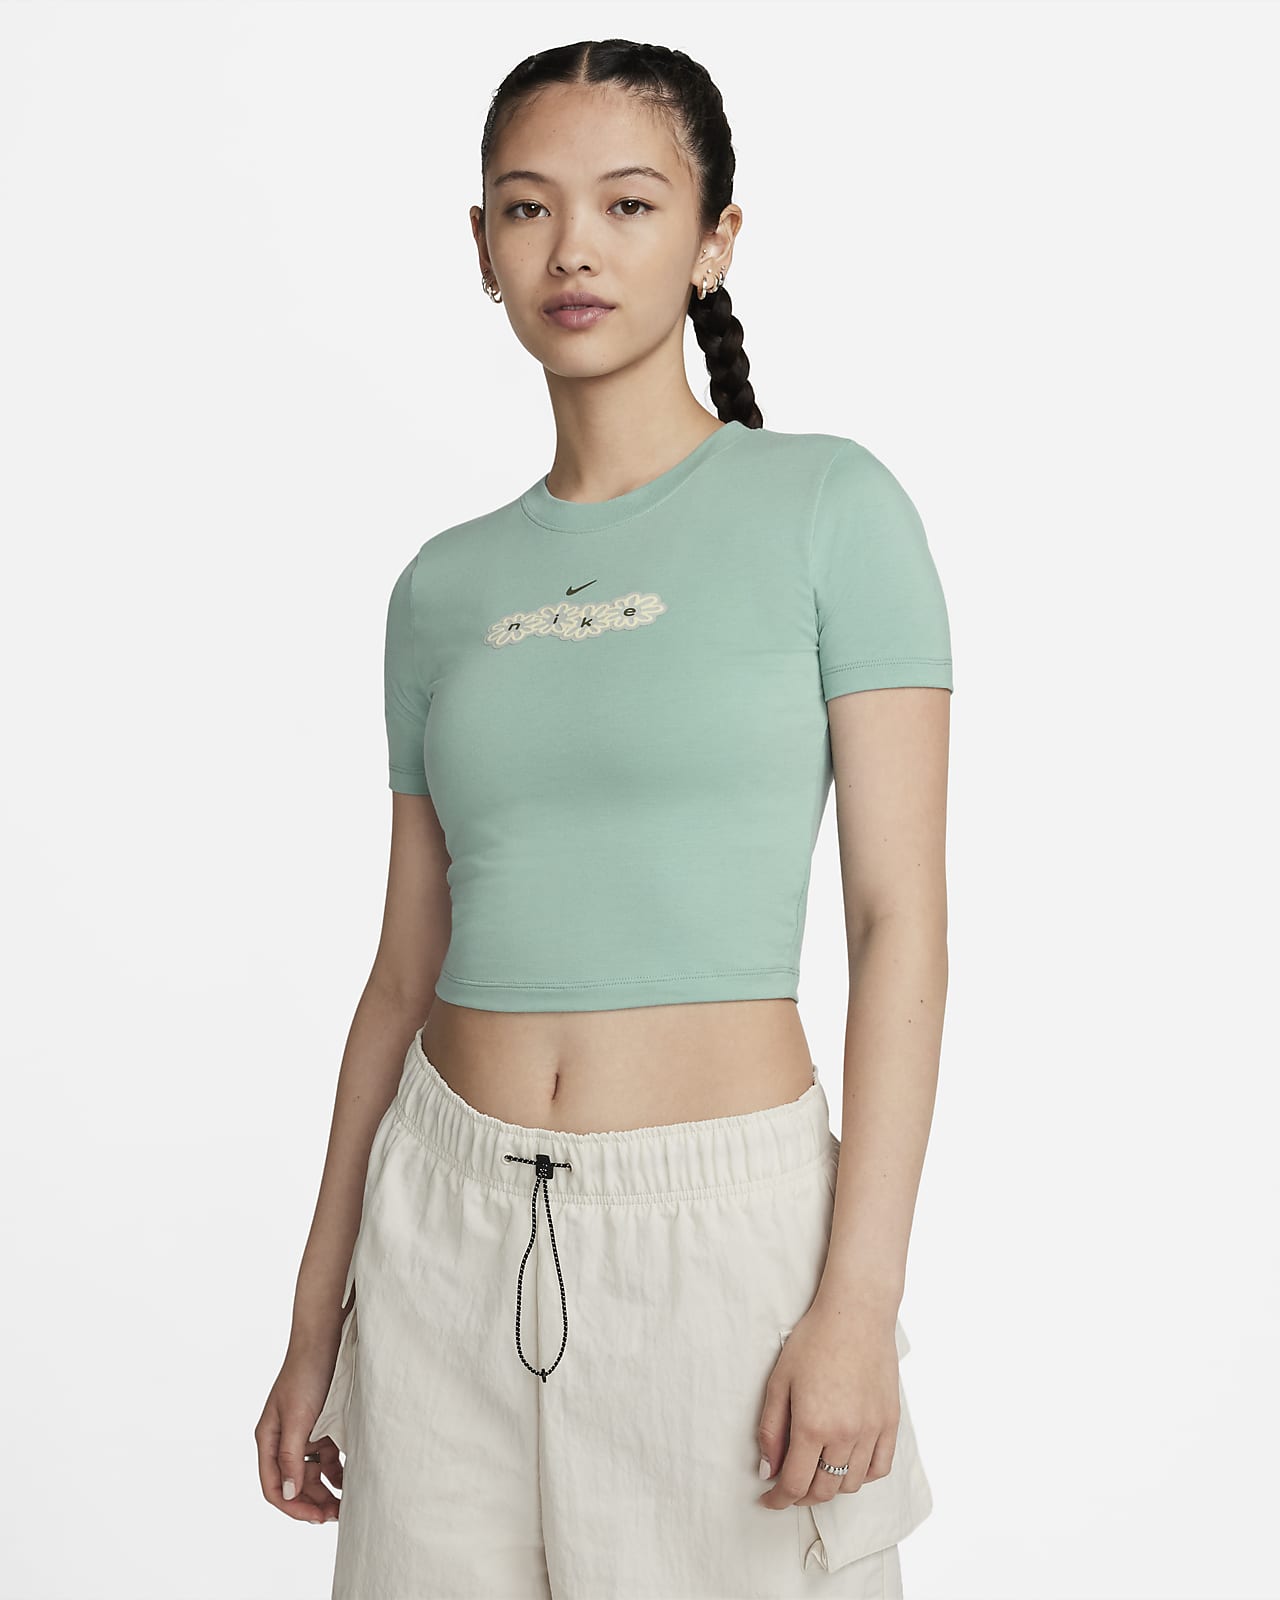 Lサイズ Nike off-white クロップド tシャツ tee